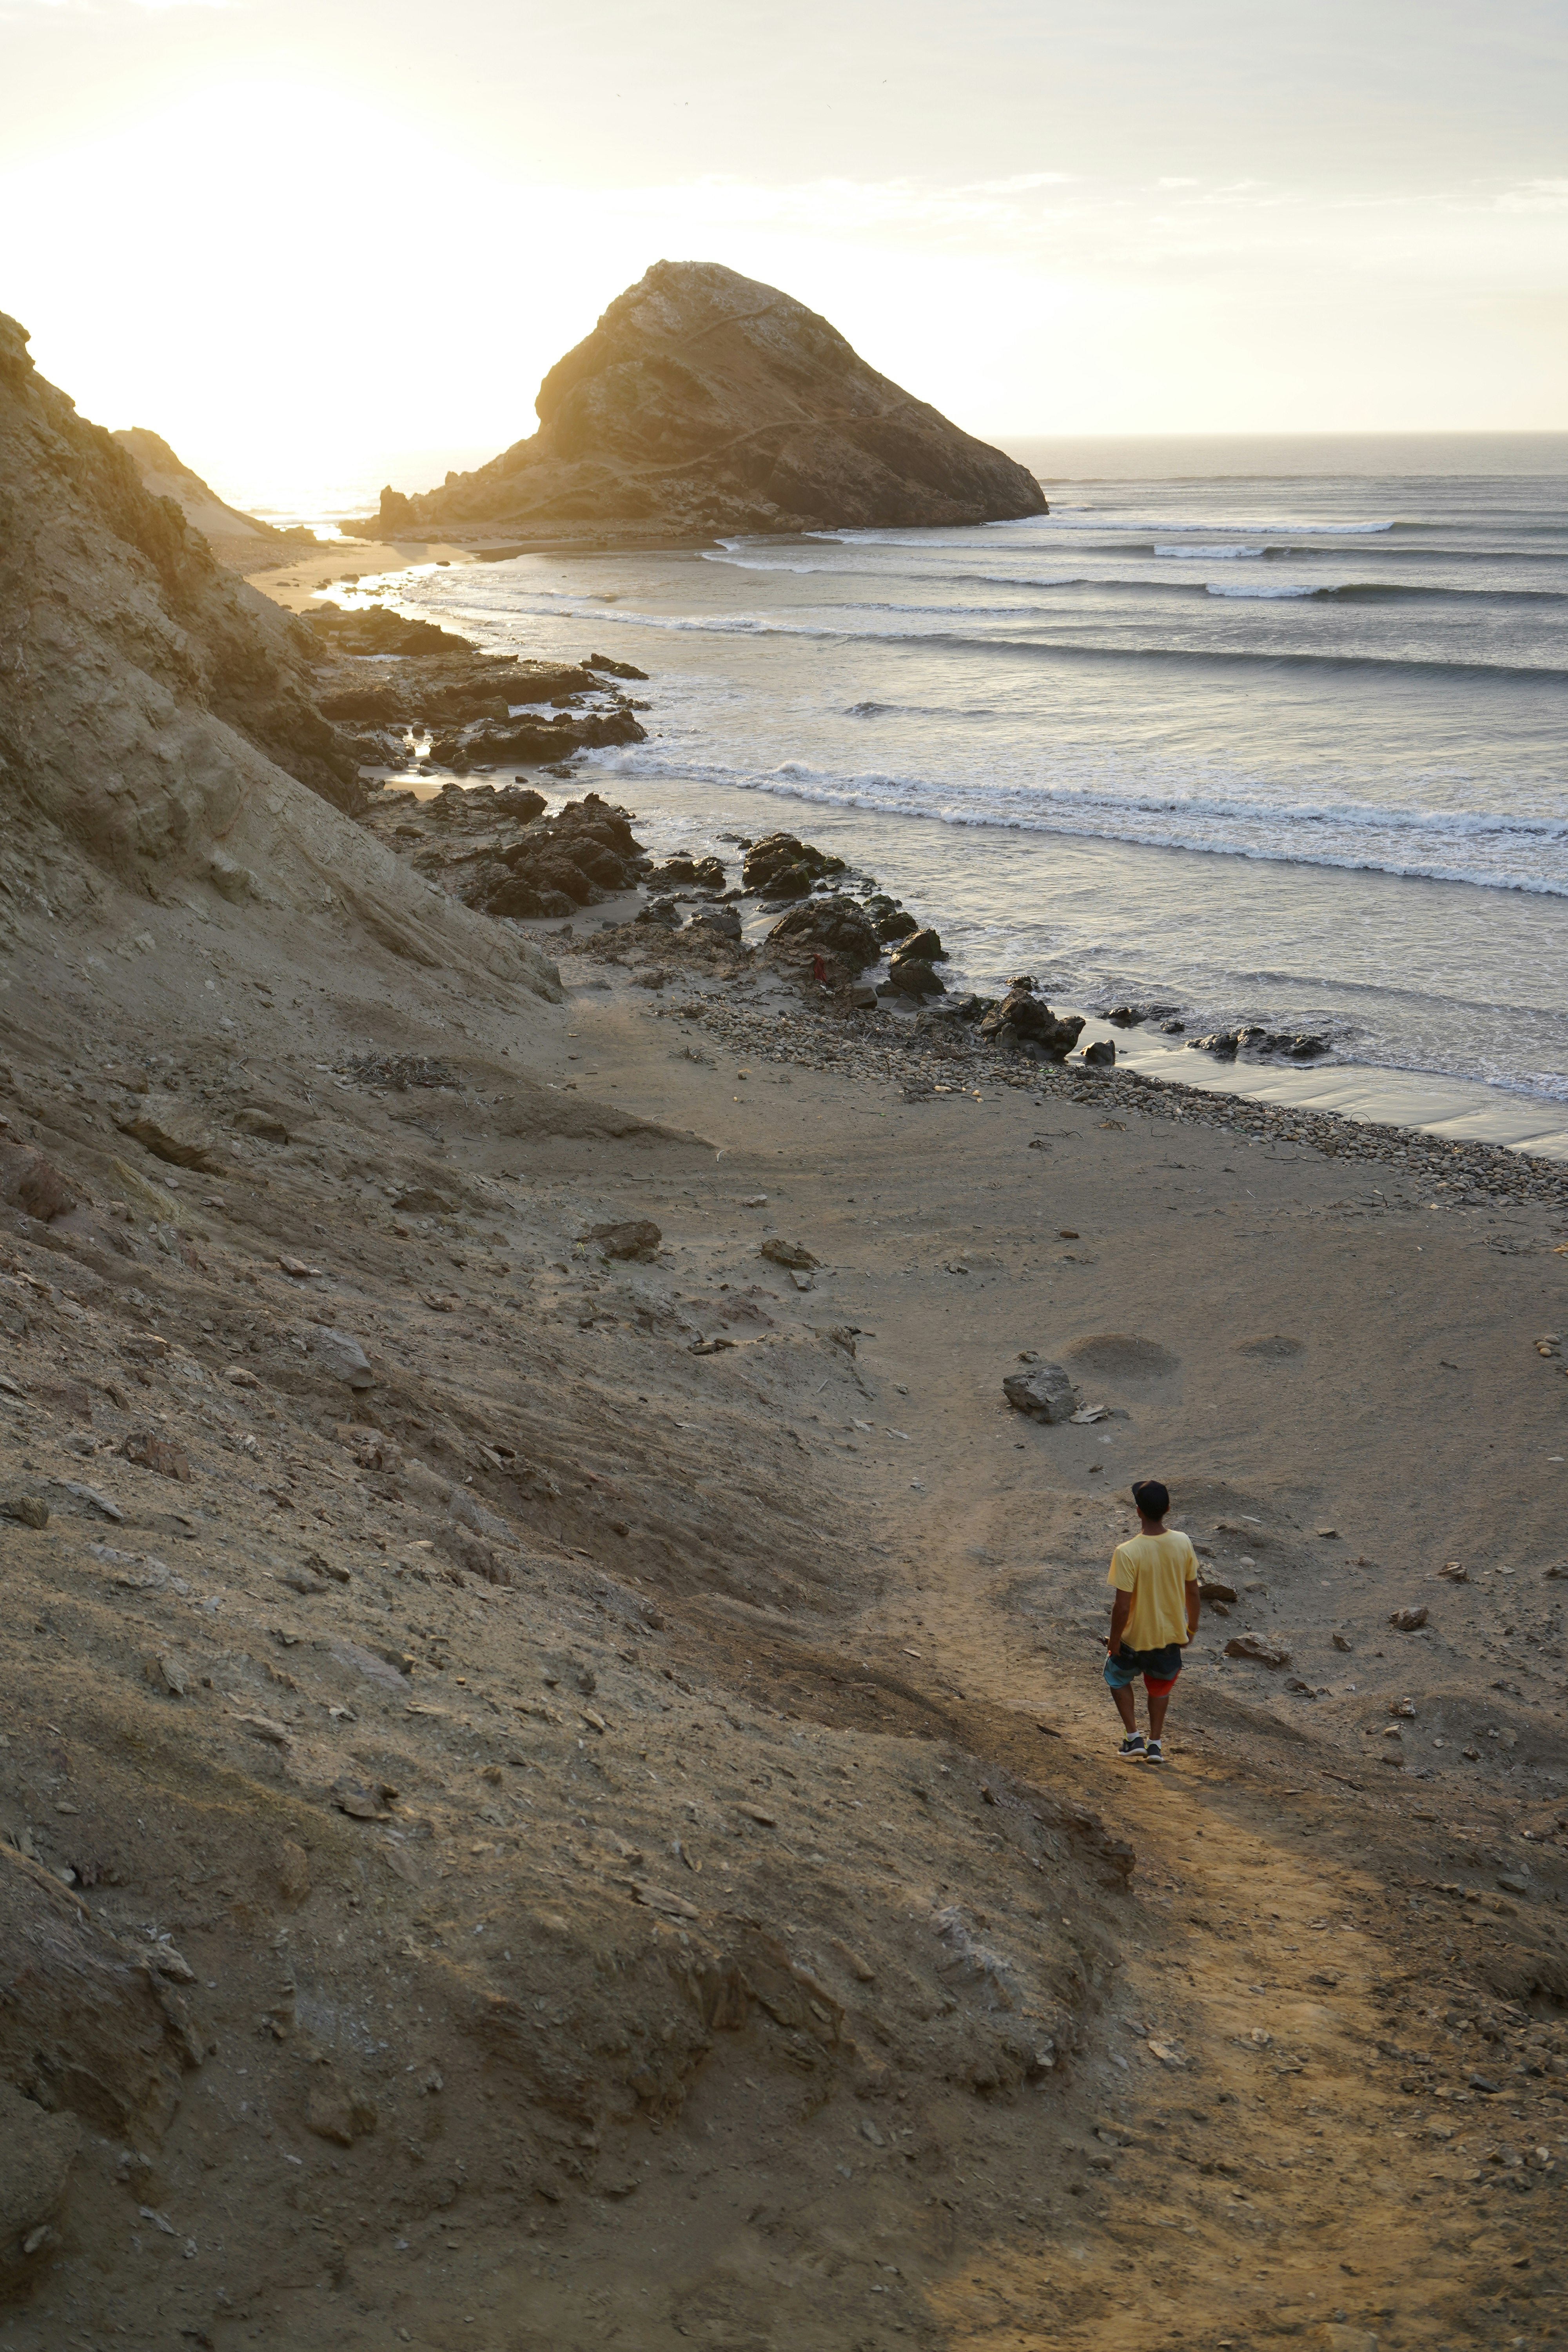 A man walks down a rocky path to a beach